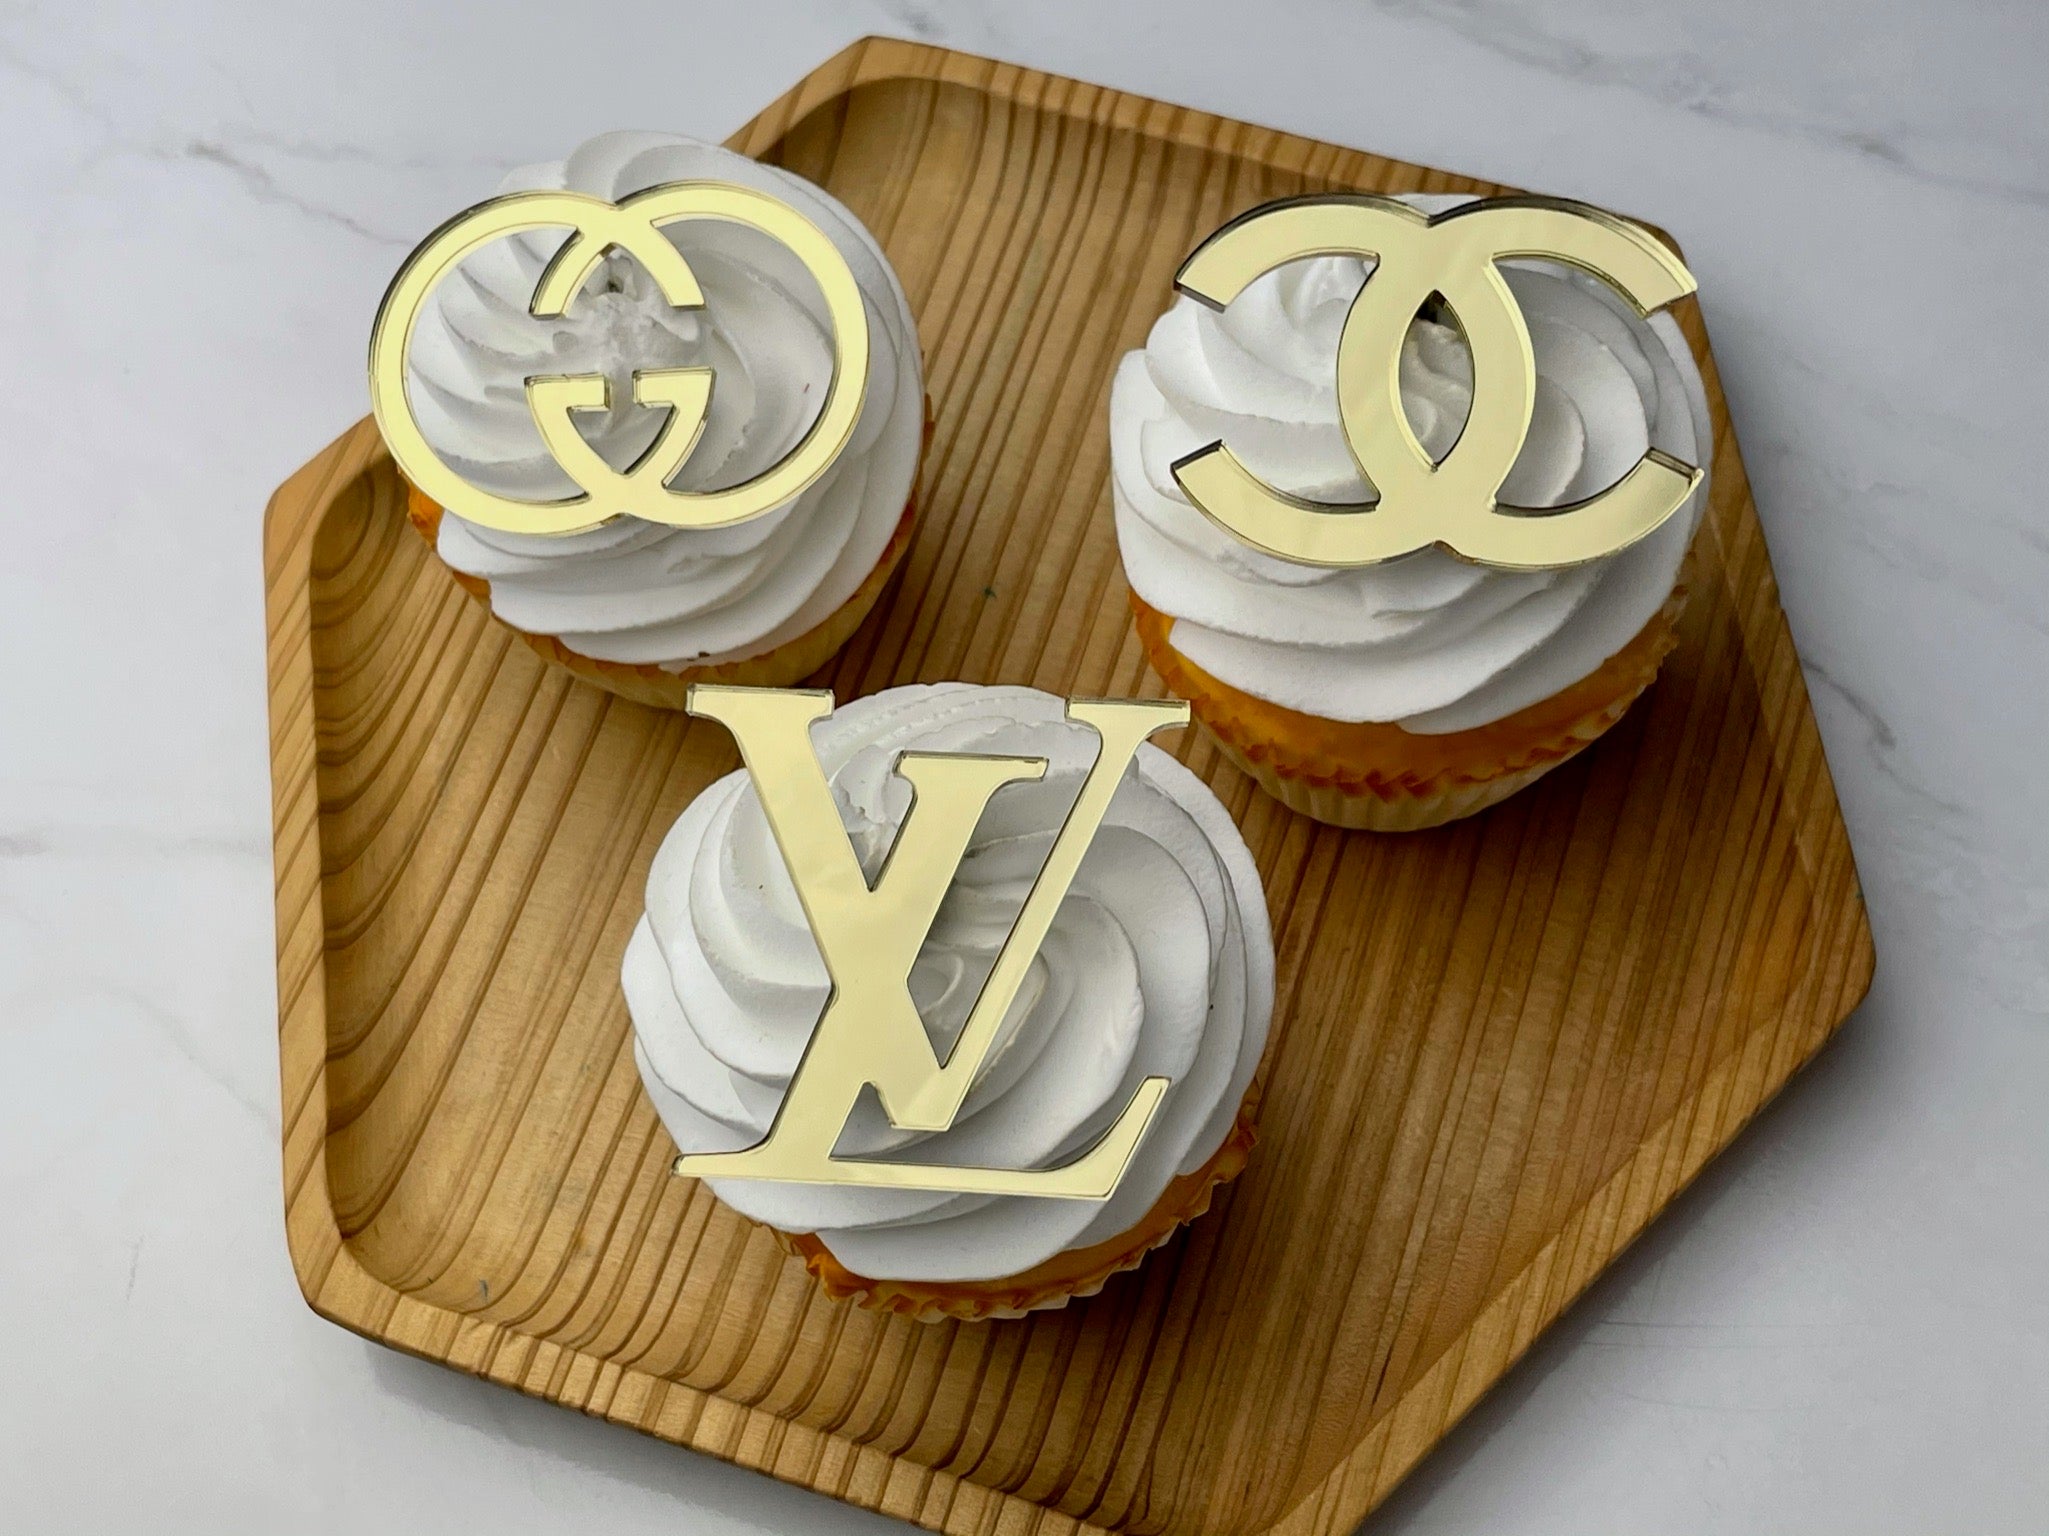 Louis Vuitton Edible Image Cupcake Cookie Topper